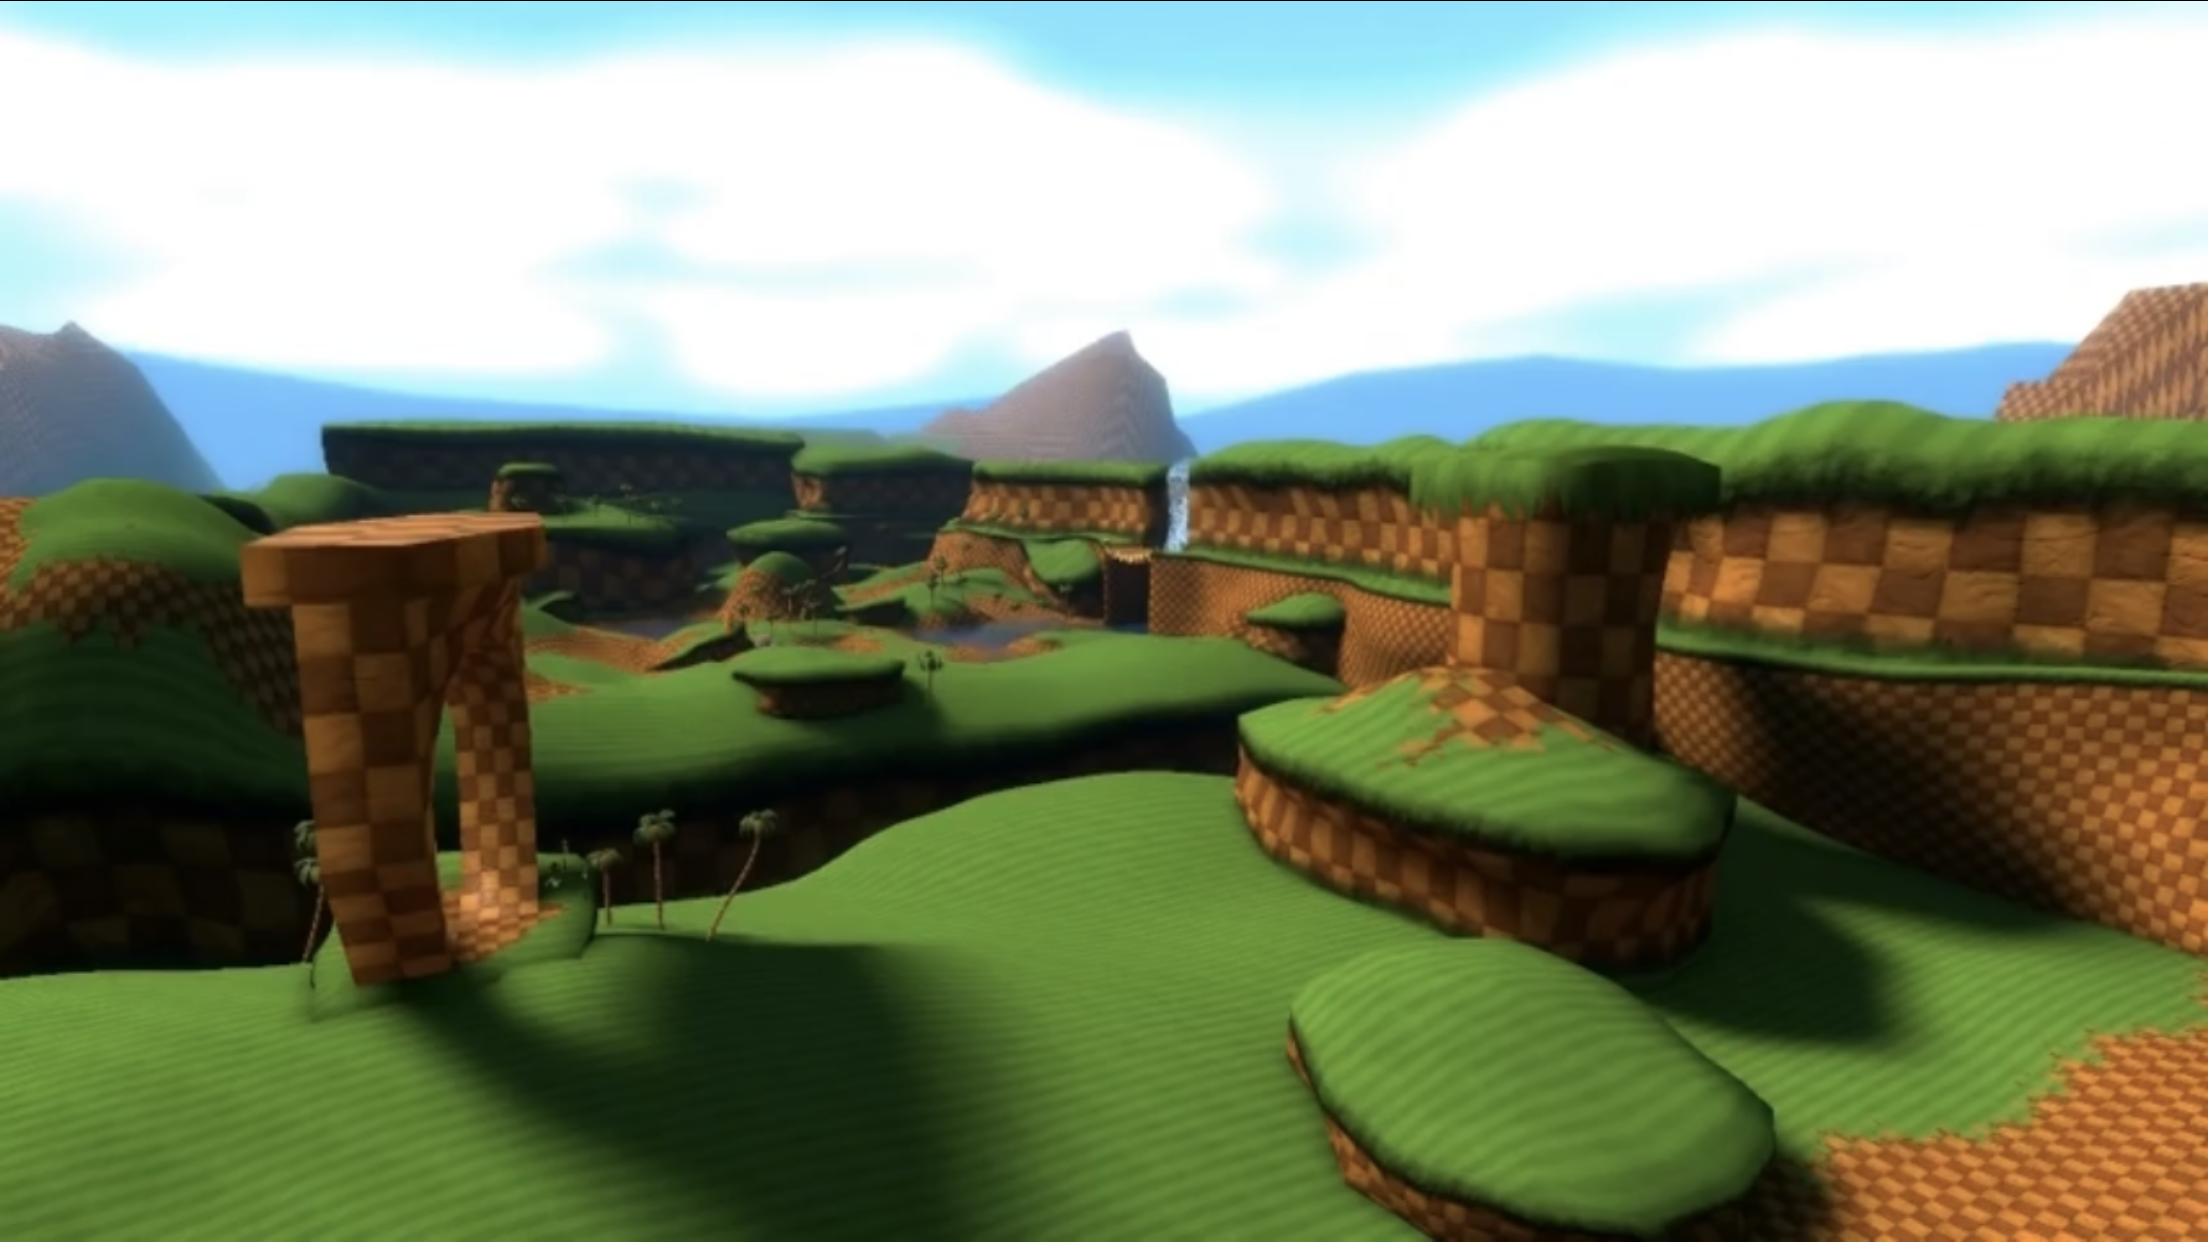 Green Hill Zone | SuperMarioGlitchy4 Wiki | Fandom - Những ai là fan của trò chơi điện tử chắc không thể bỏ qua Green Hill Zone - một trong những màn chơi đầy kịch tính của trò chơi Sonic. Cùng nhìn thấy hình ảnh về khu vực này, những cơn gió mạnh, những địa hình đầy thử thách và cảm nhận được sự náo nhiệt của trò chơi ngay trong đó.